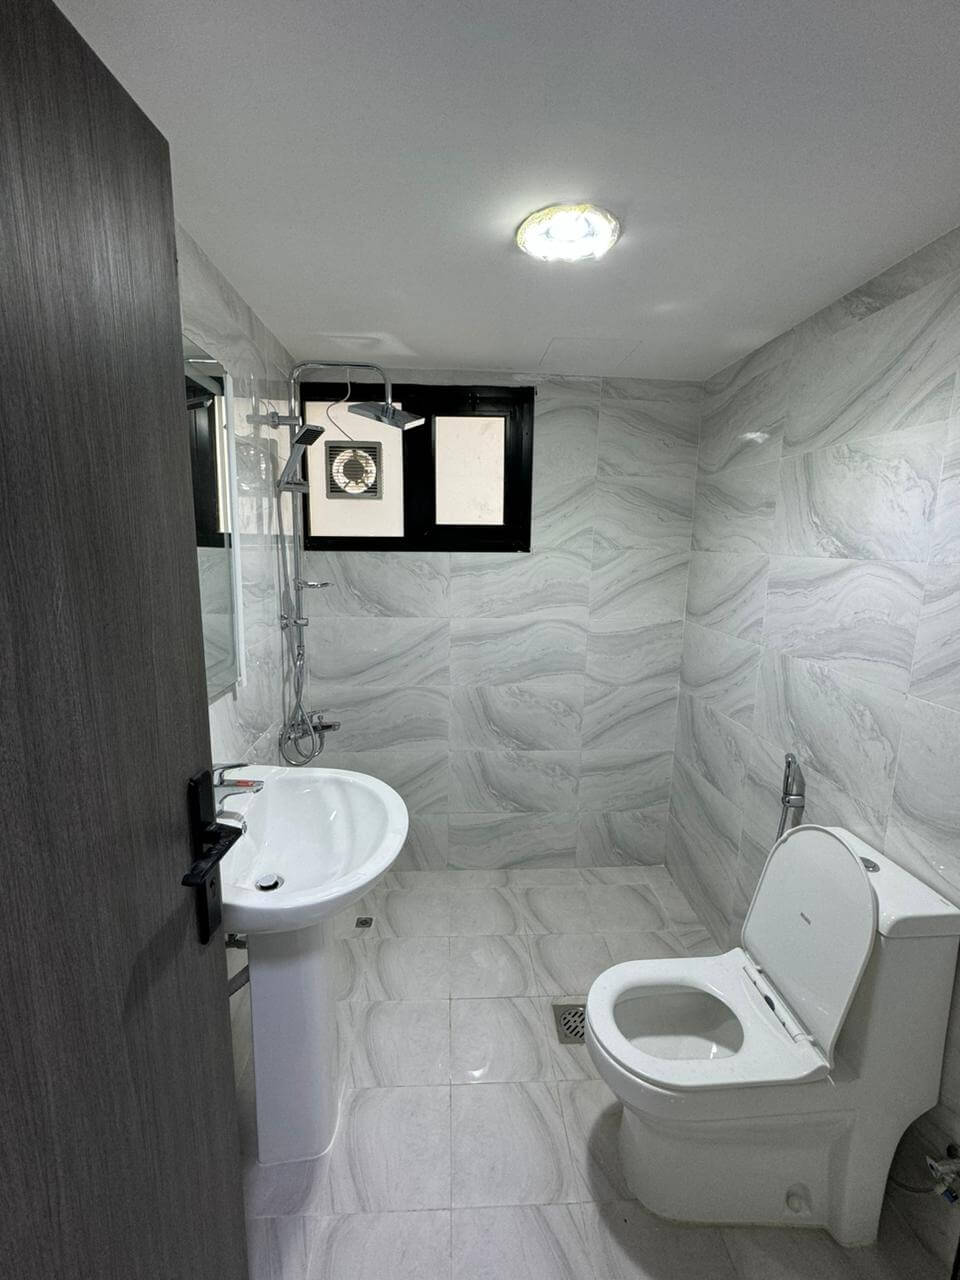 غرف مميزة للإيجار الشهري في مردف دبي - Rooms for monthly rent in Mirdif Dubai